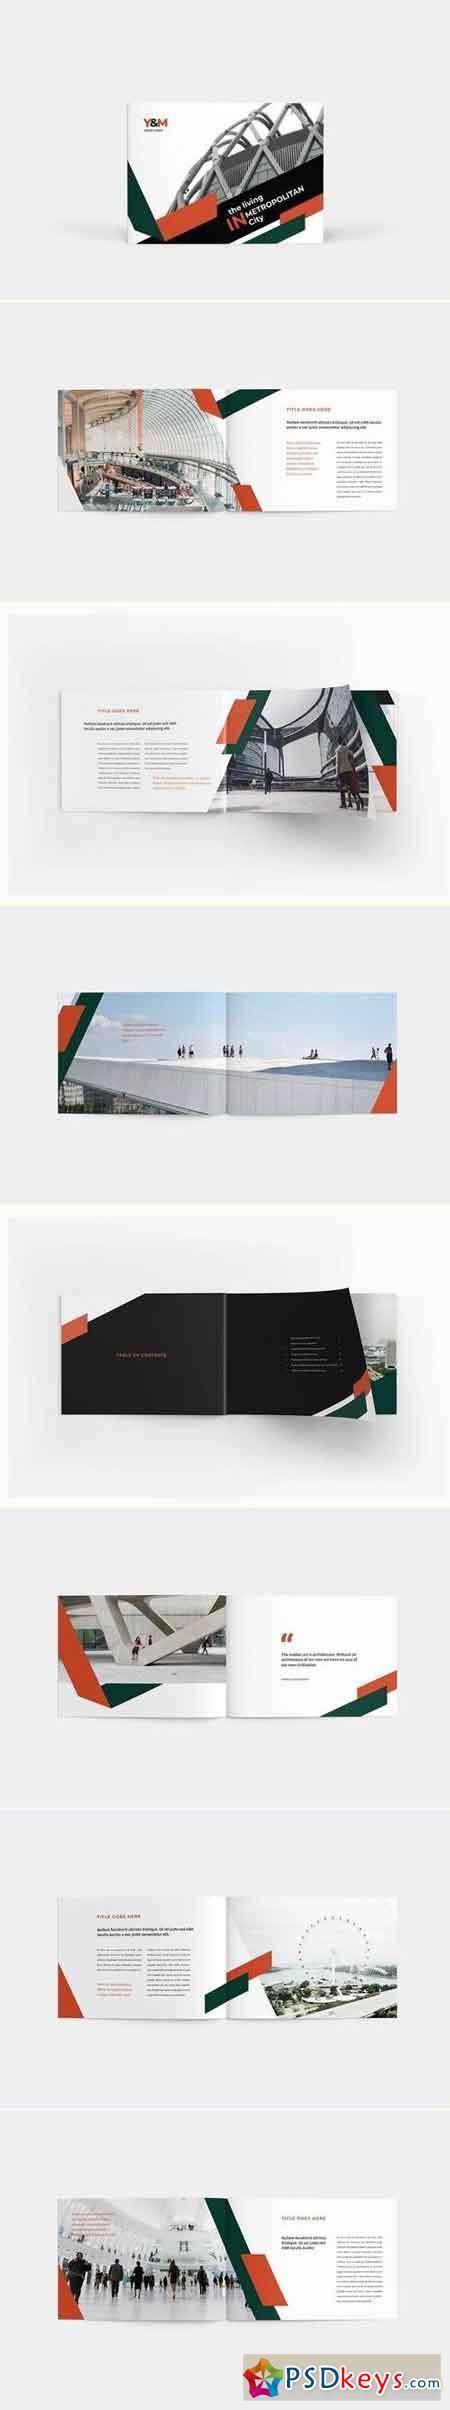 Architecture Brochure Landscape